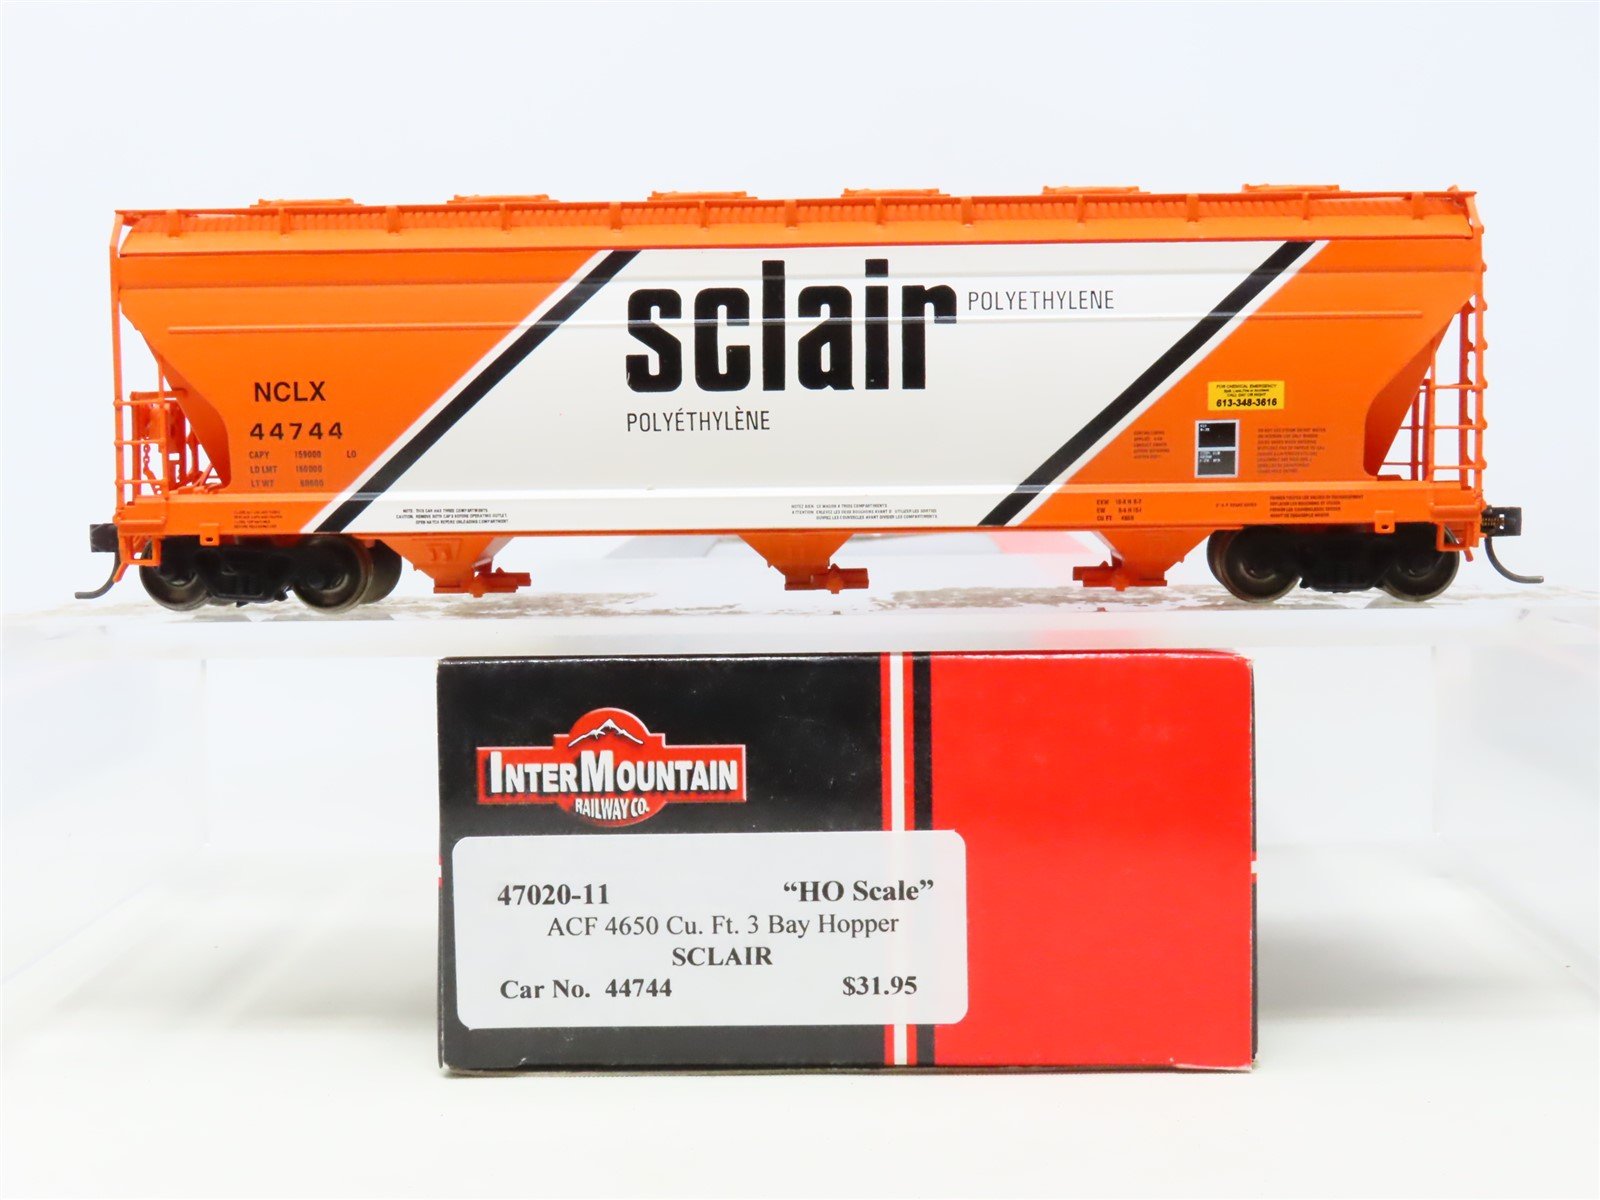 HO Scale InterMountain 47020-11 NCLX Sclair 3-Bay Covered Hopper #44744